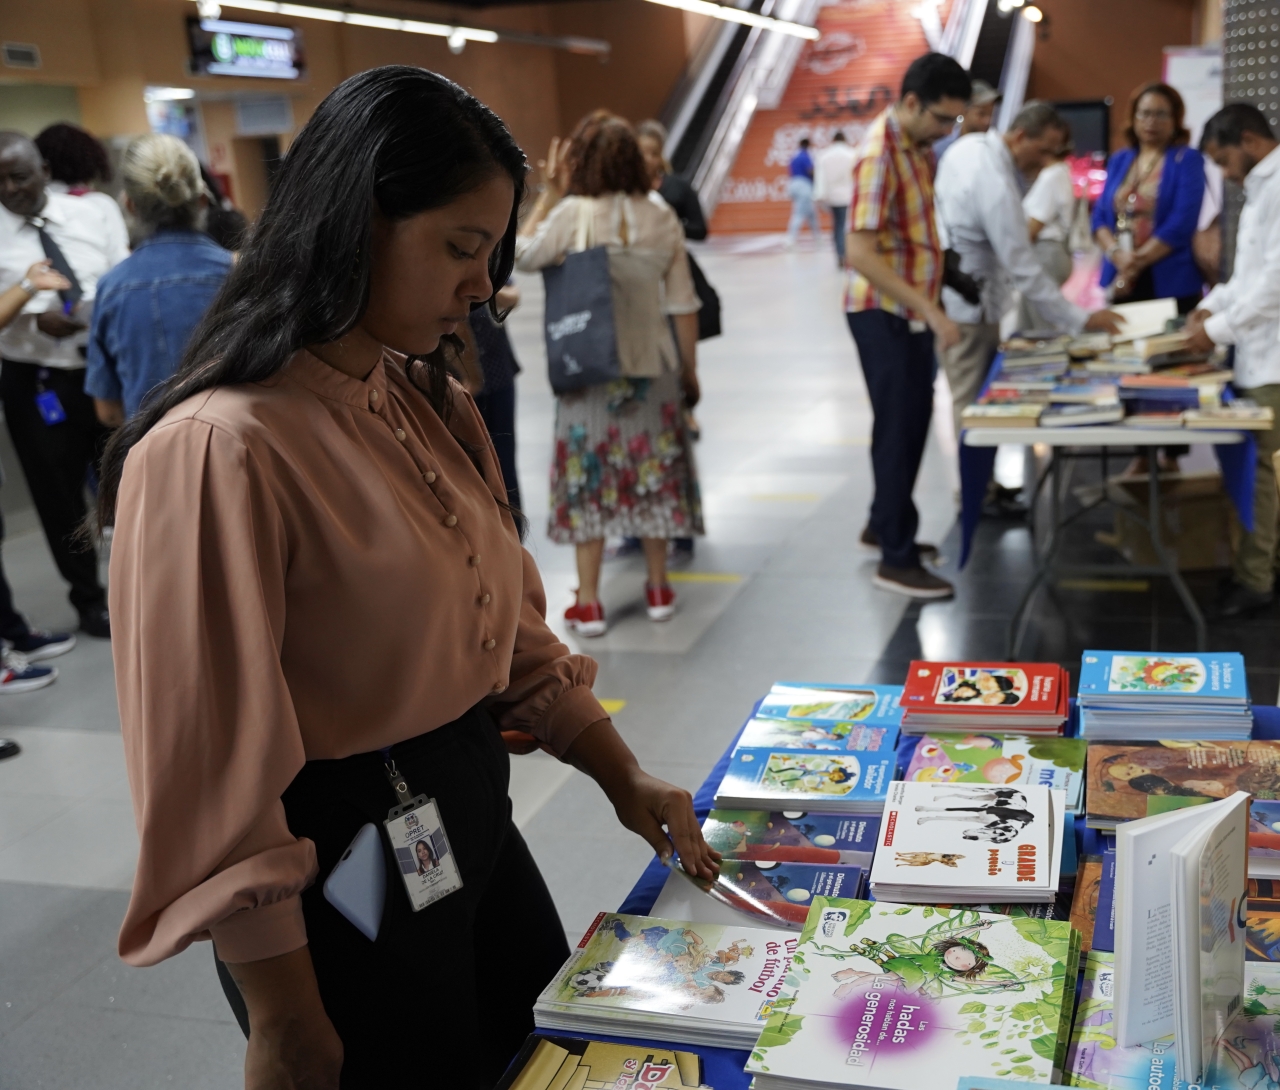 Cultura celebra Día Internacional del Libro con apertura de biblioteca, donación, intercambio y venta de libros